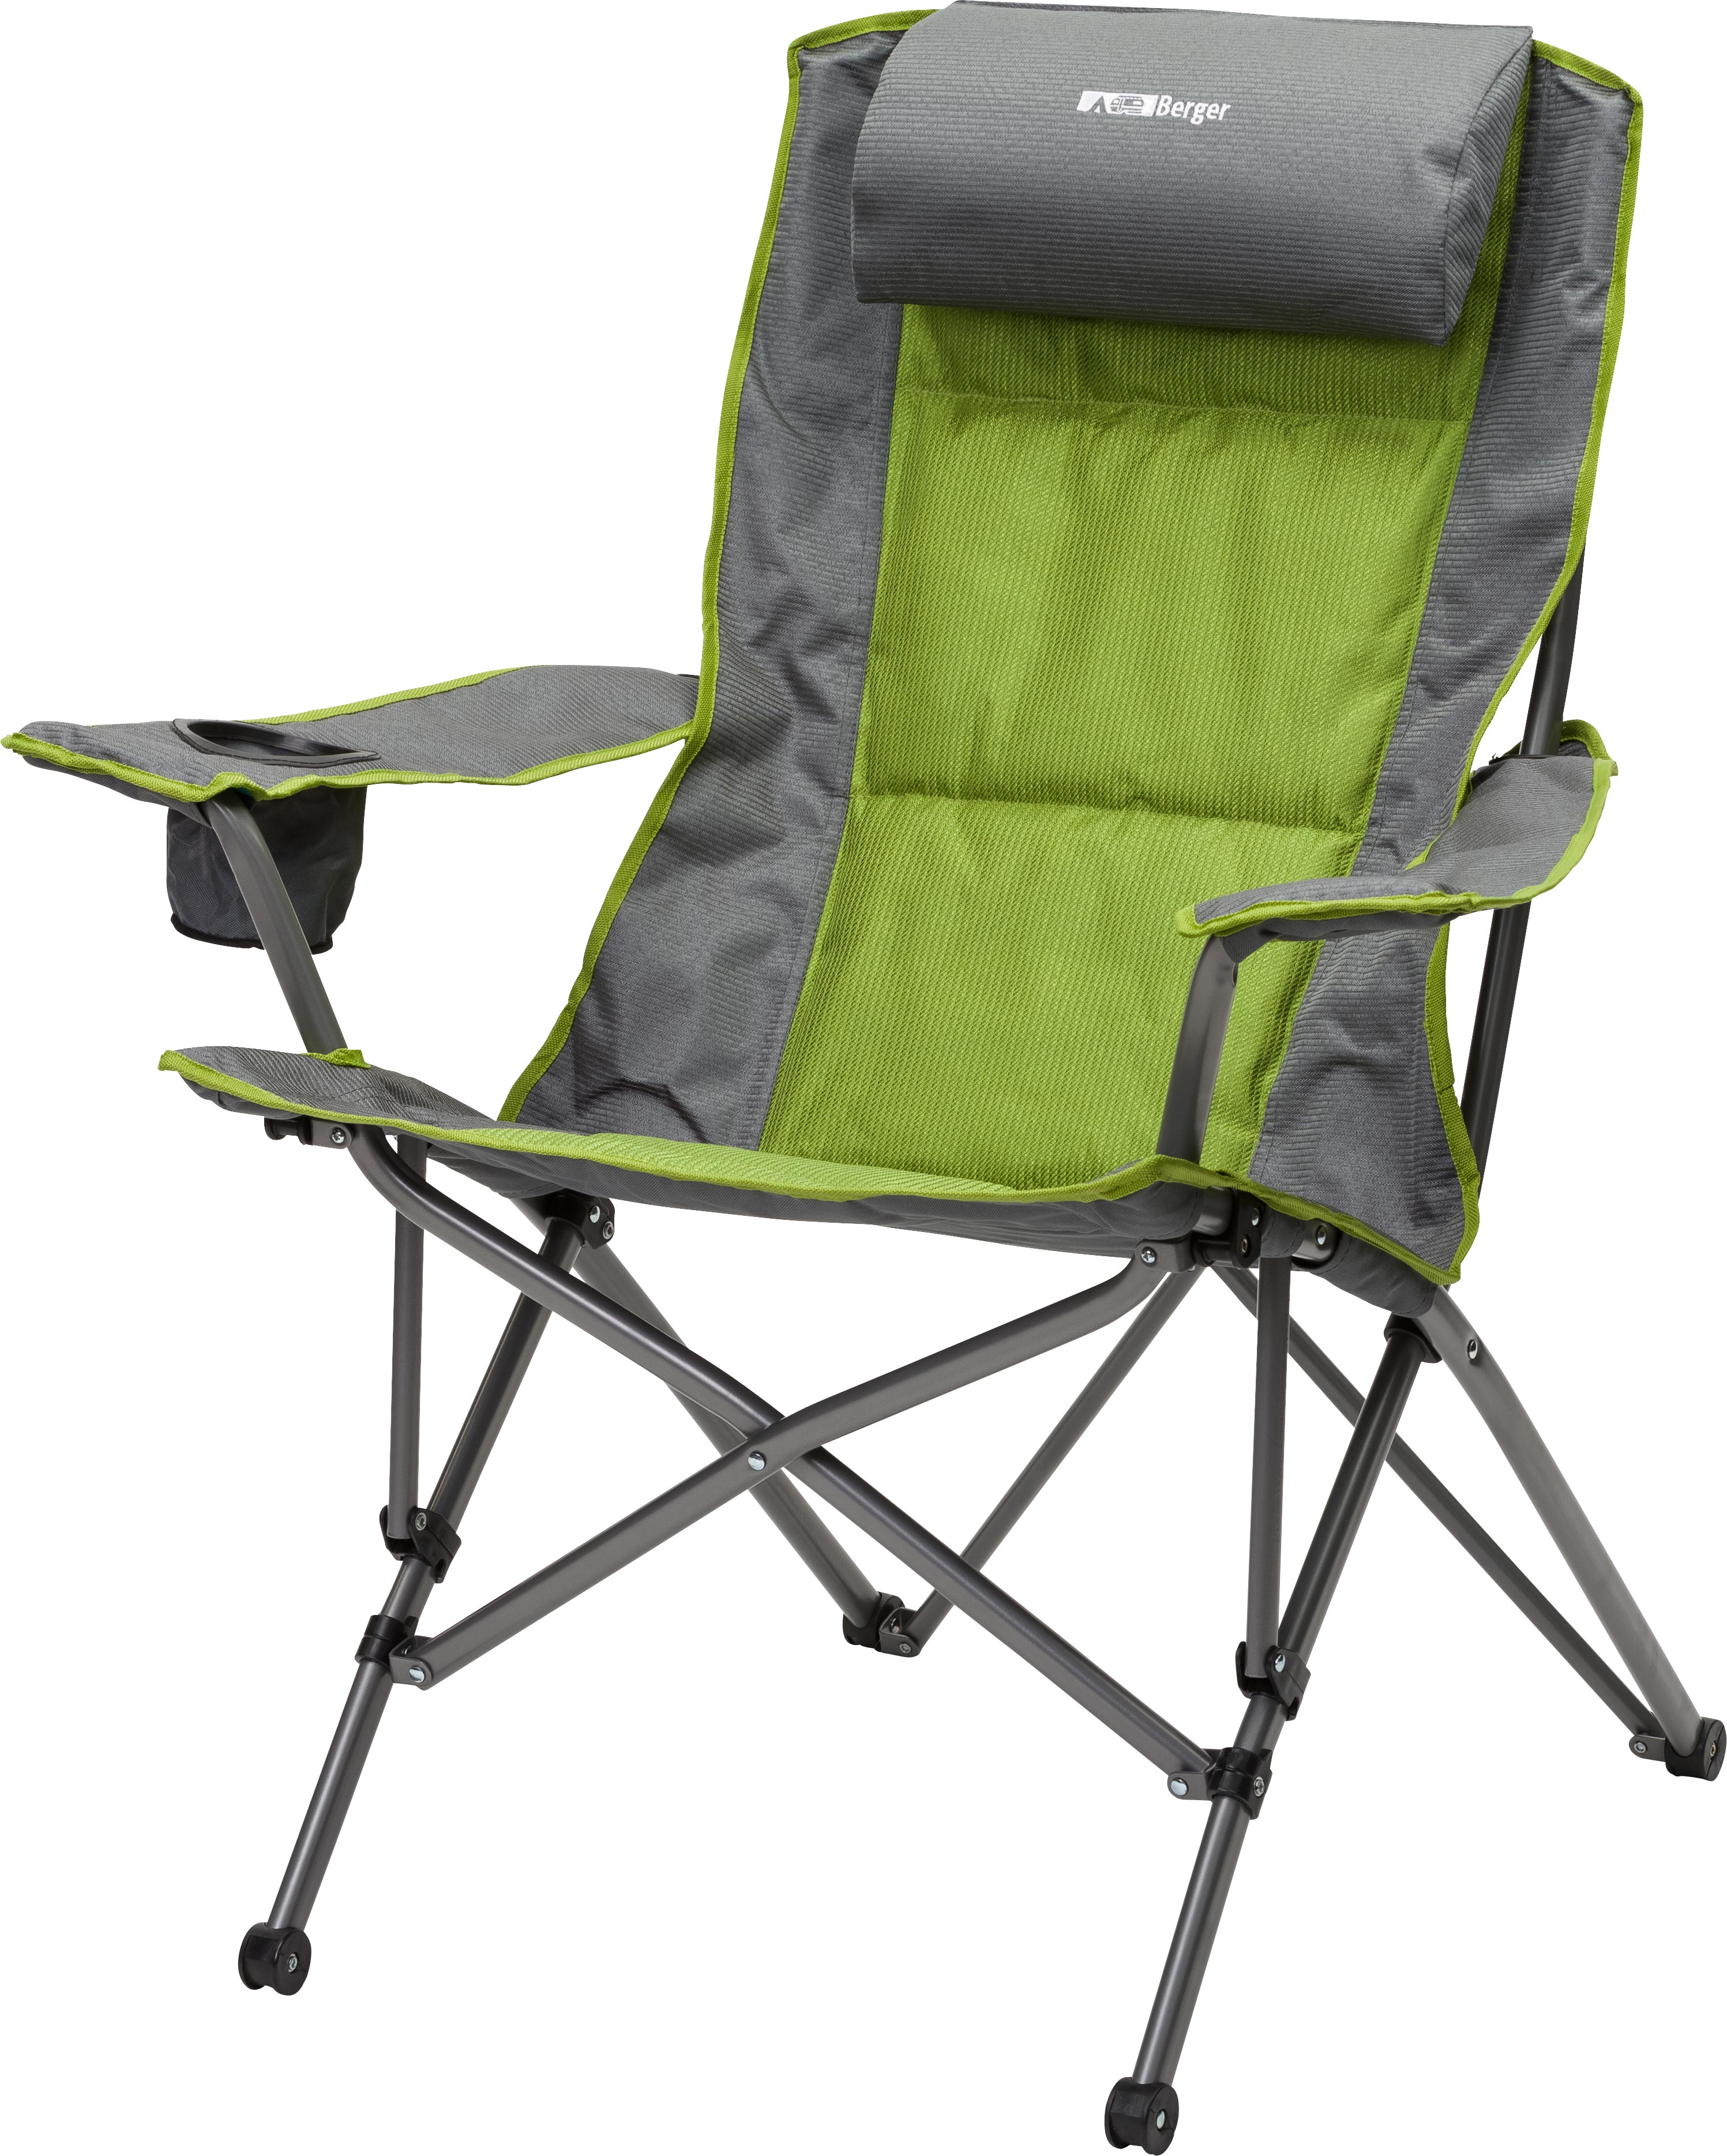 Кресло туристическое подлокотниками. Складное кресло Frosinone Camping Active. Мебель для кемпинга Berger. Стул складной туристический JD-1005 33,5х27х35см. Blaupunkt стул туристический складной.